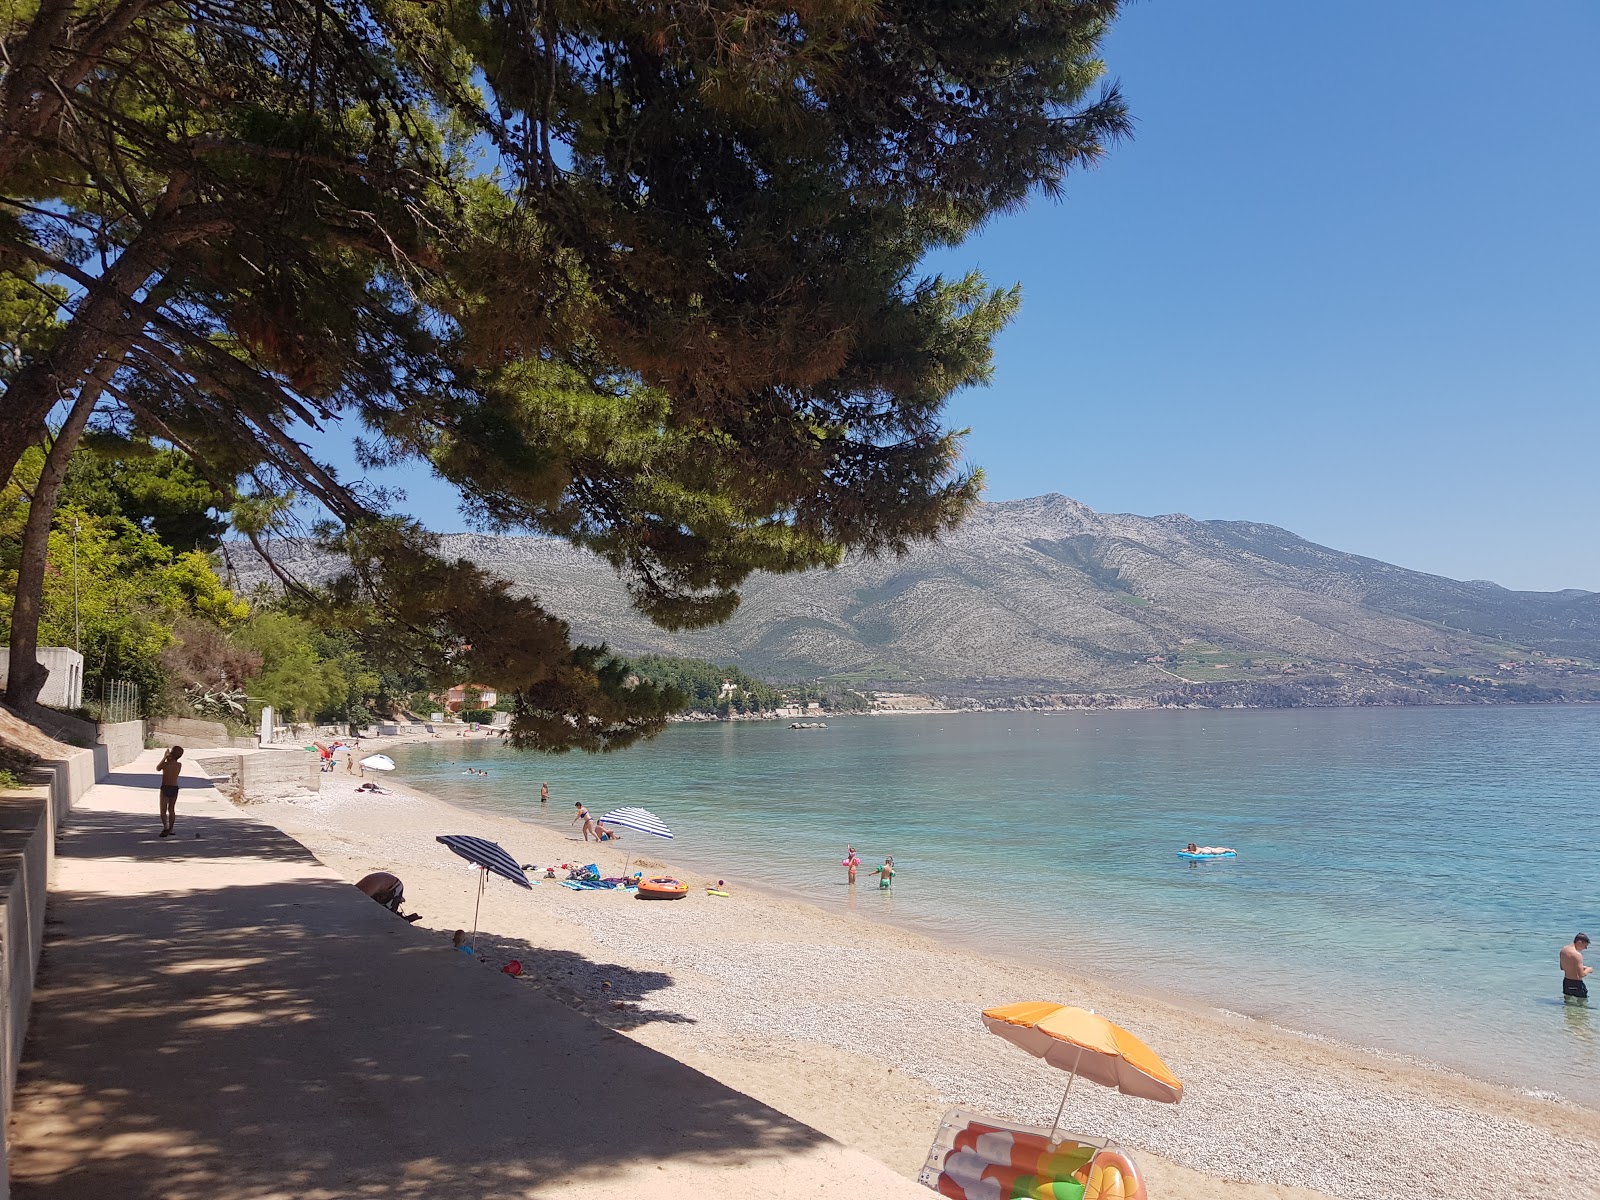 Foto af Trstenica beach - populært sted blandt afslapningskendere